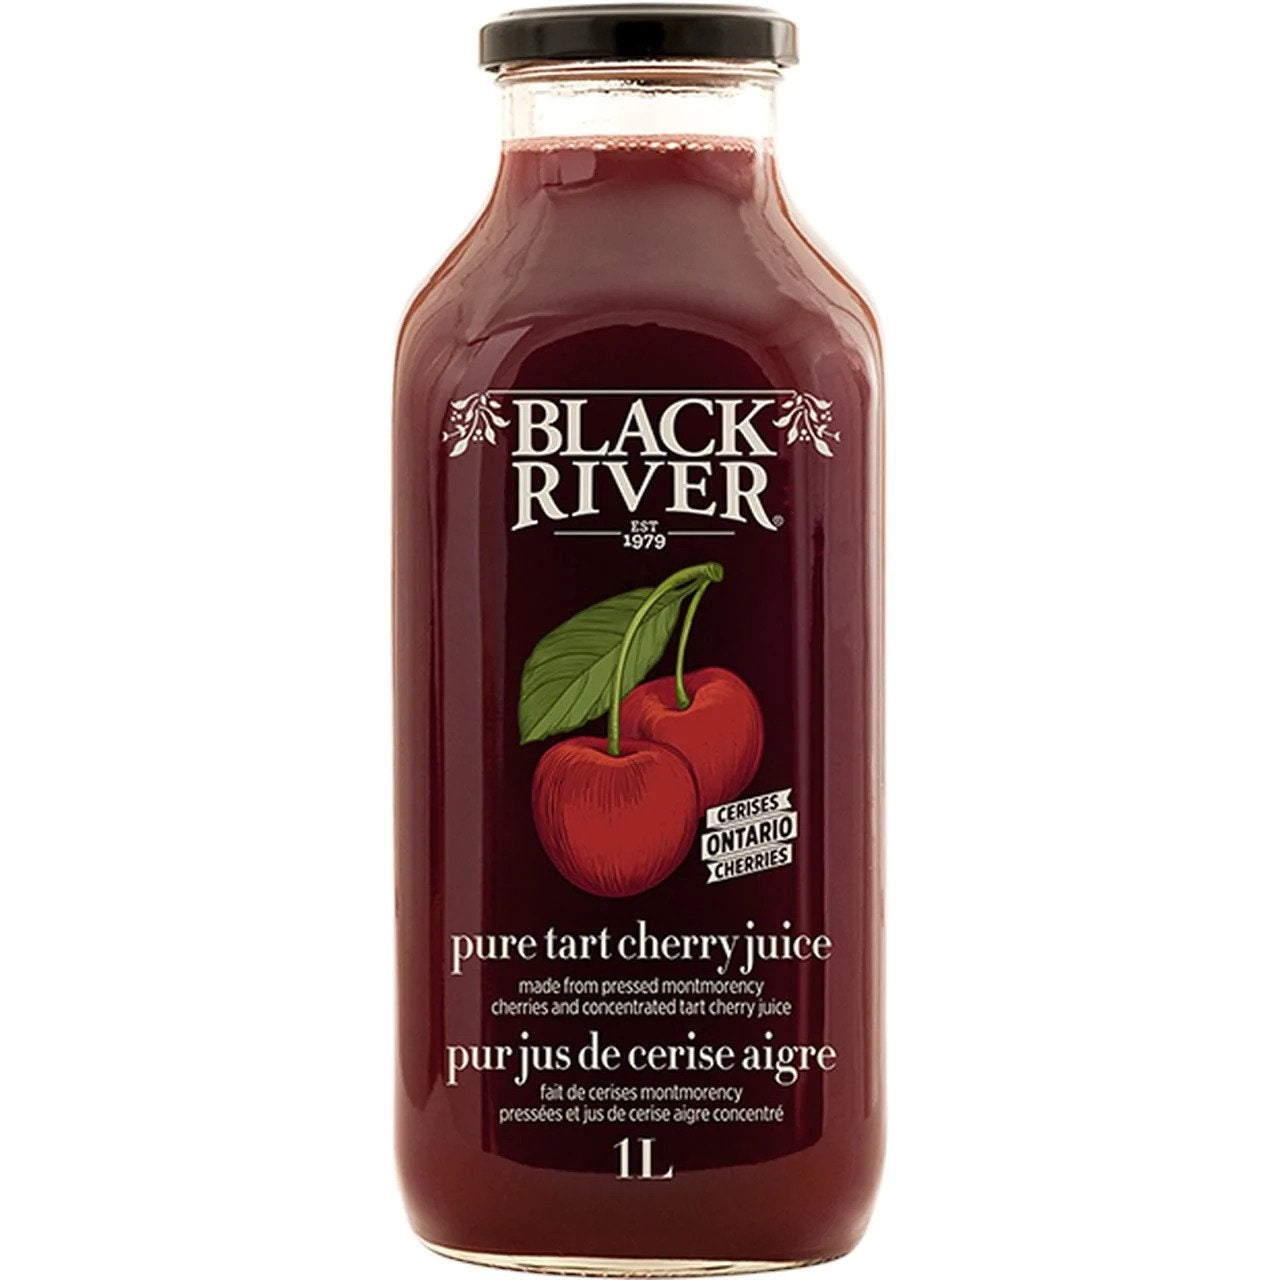 Tart cherry juice for immune support